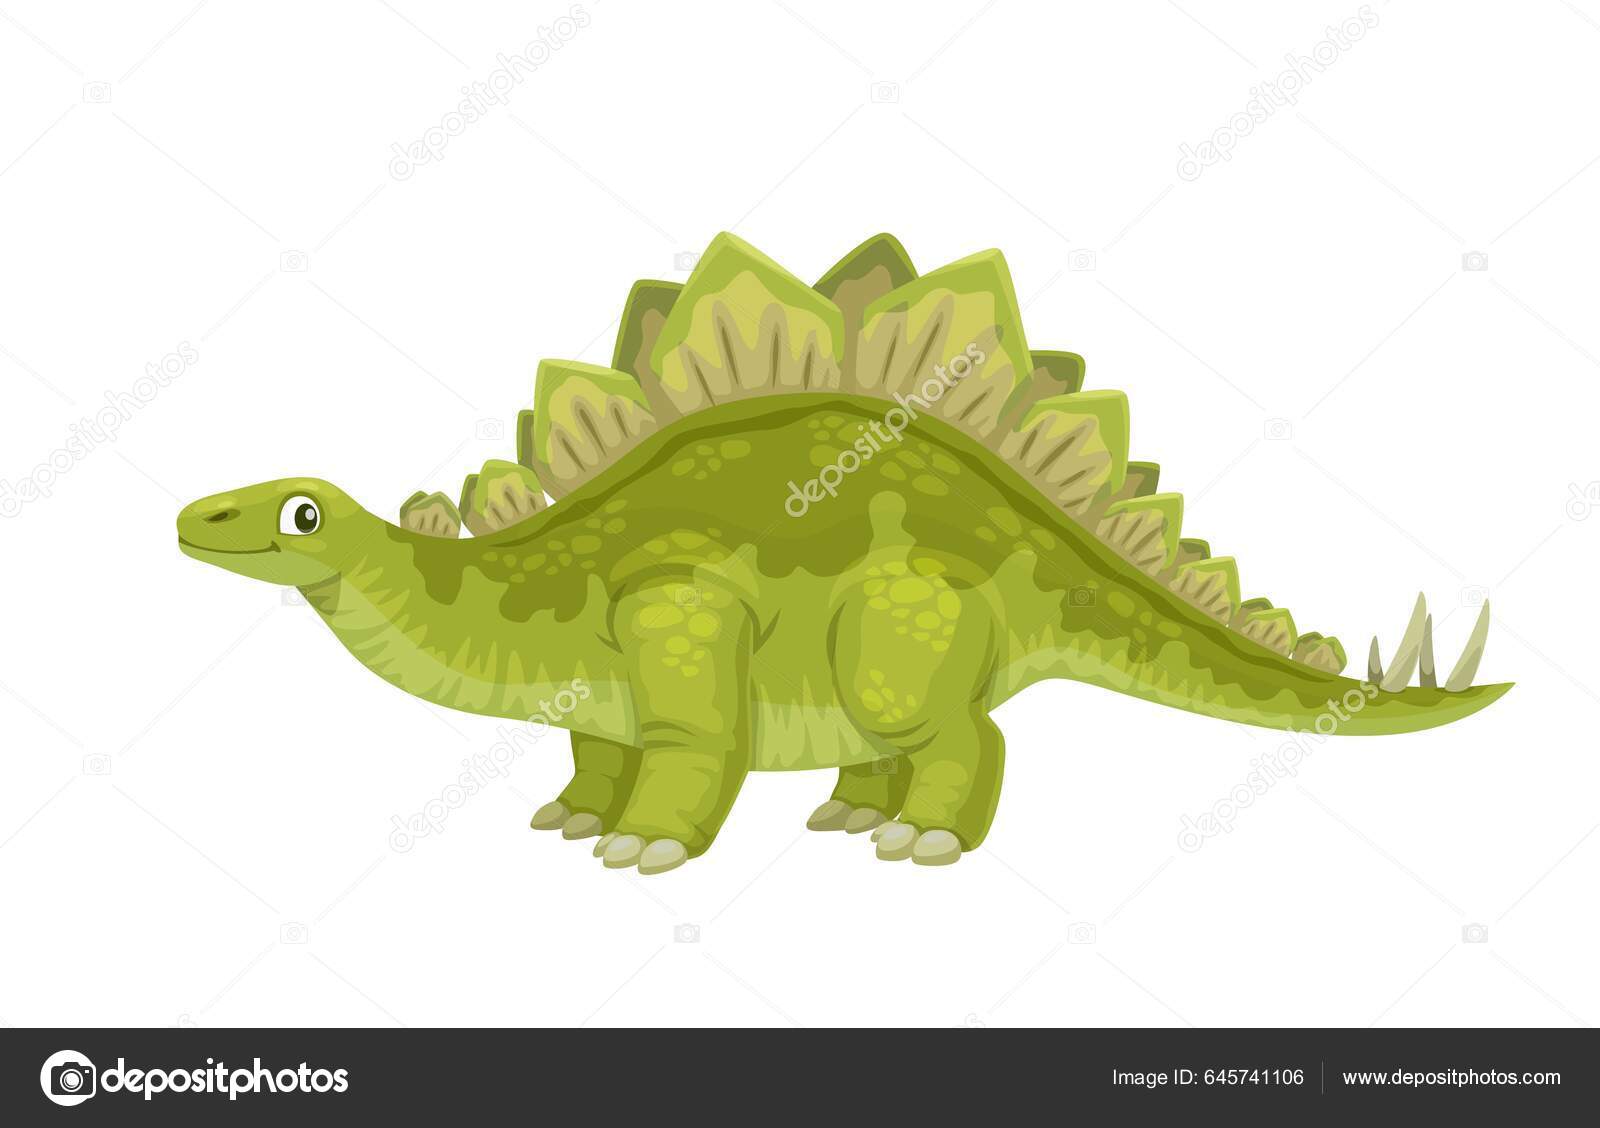 Personagem de desenho animado do espinossauro animal pré-histórico  dinossauro azul gigante com espinhos verdes nas costas elemento vetorial  plano para jogo para celular ou enciclopédia infantil